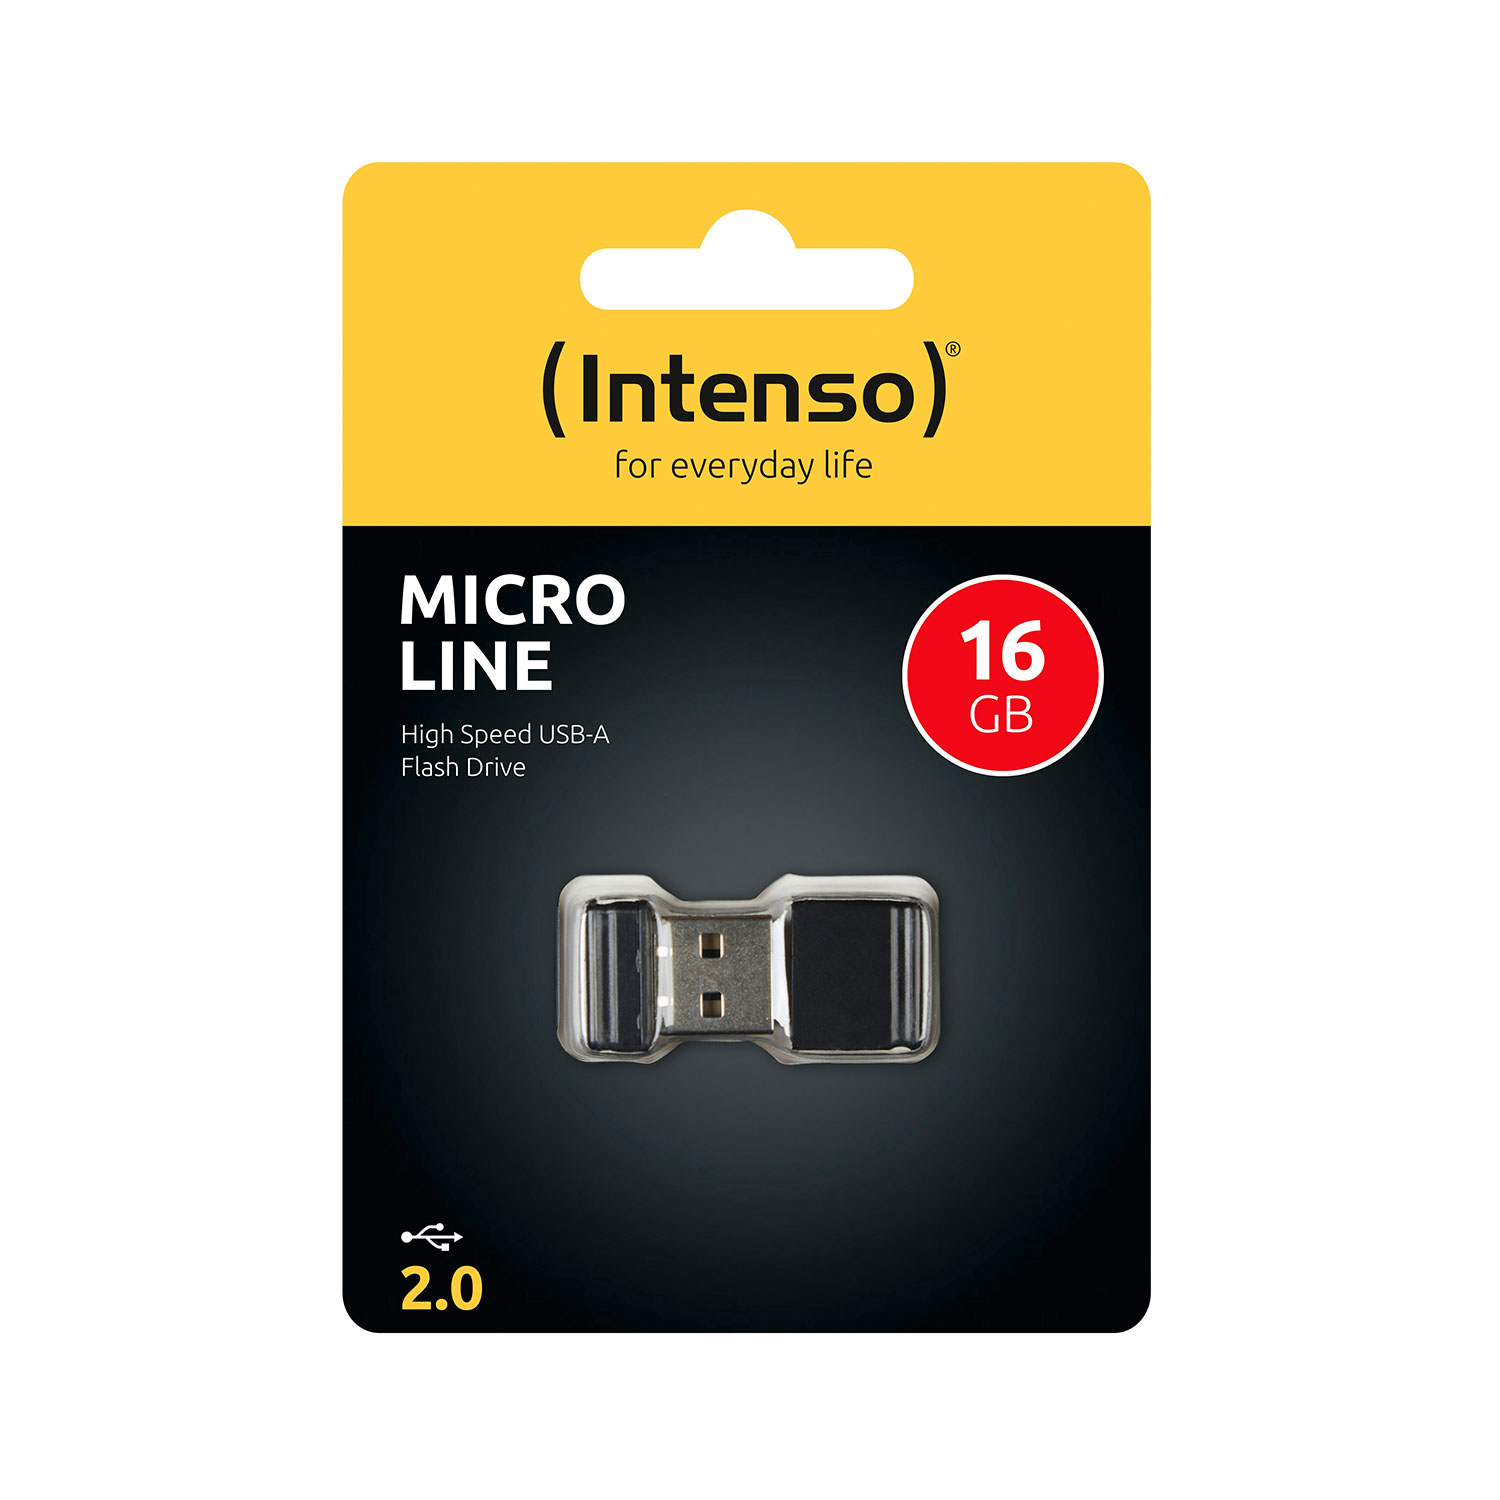 Intenso USB-Stick Micro Line 2.0 schwarz 16 GB  